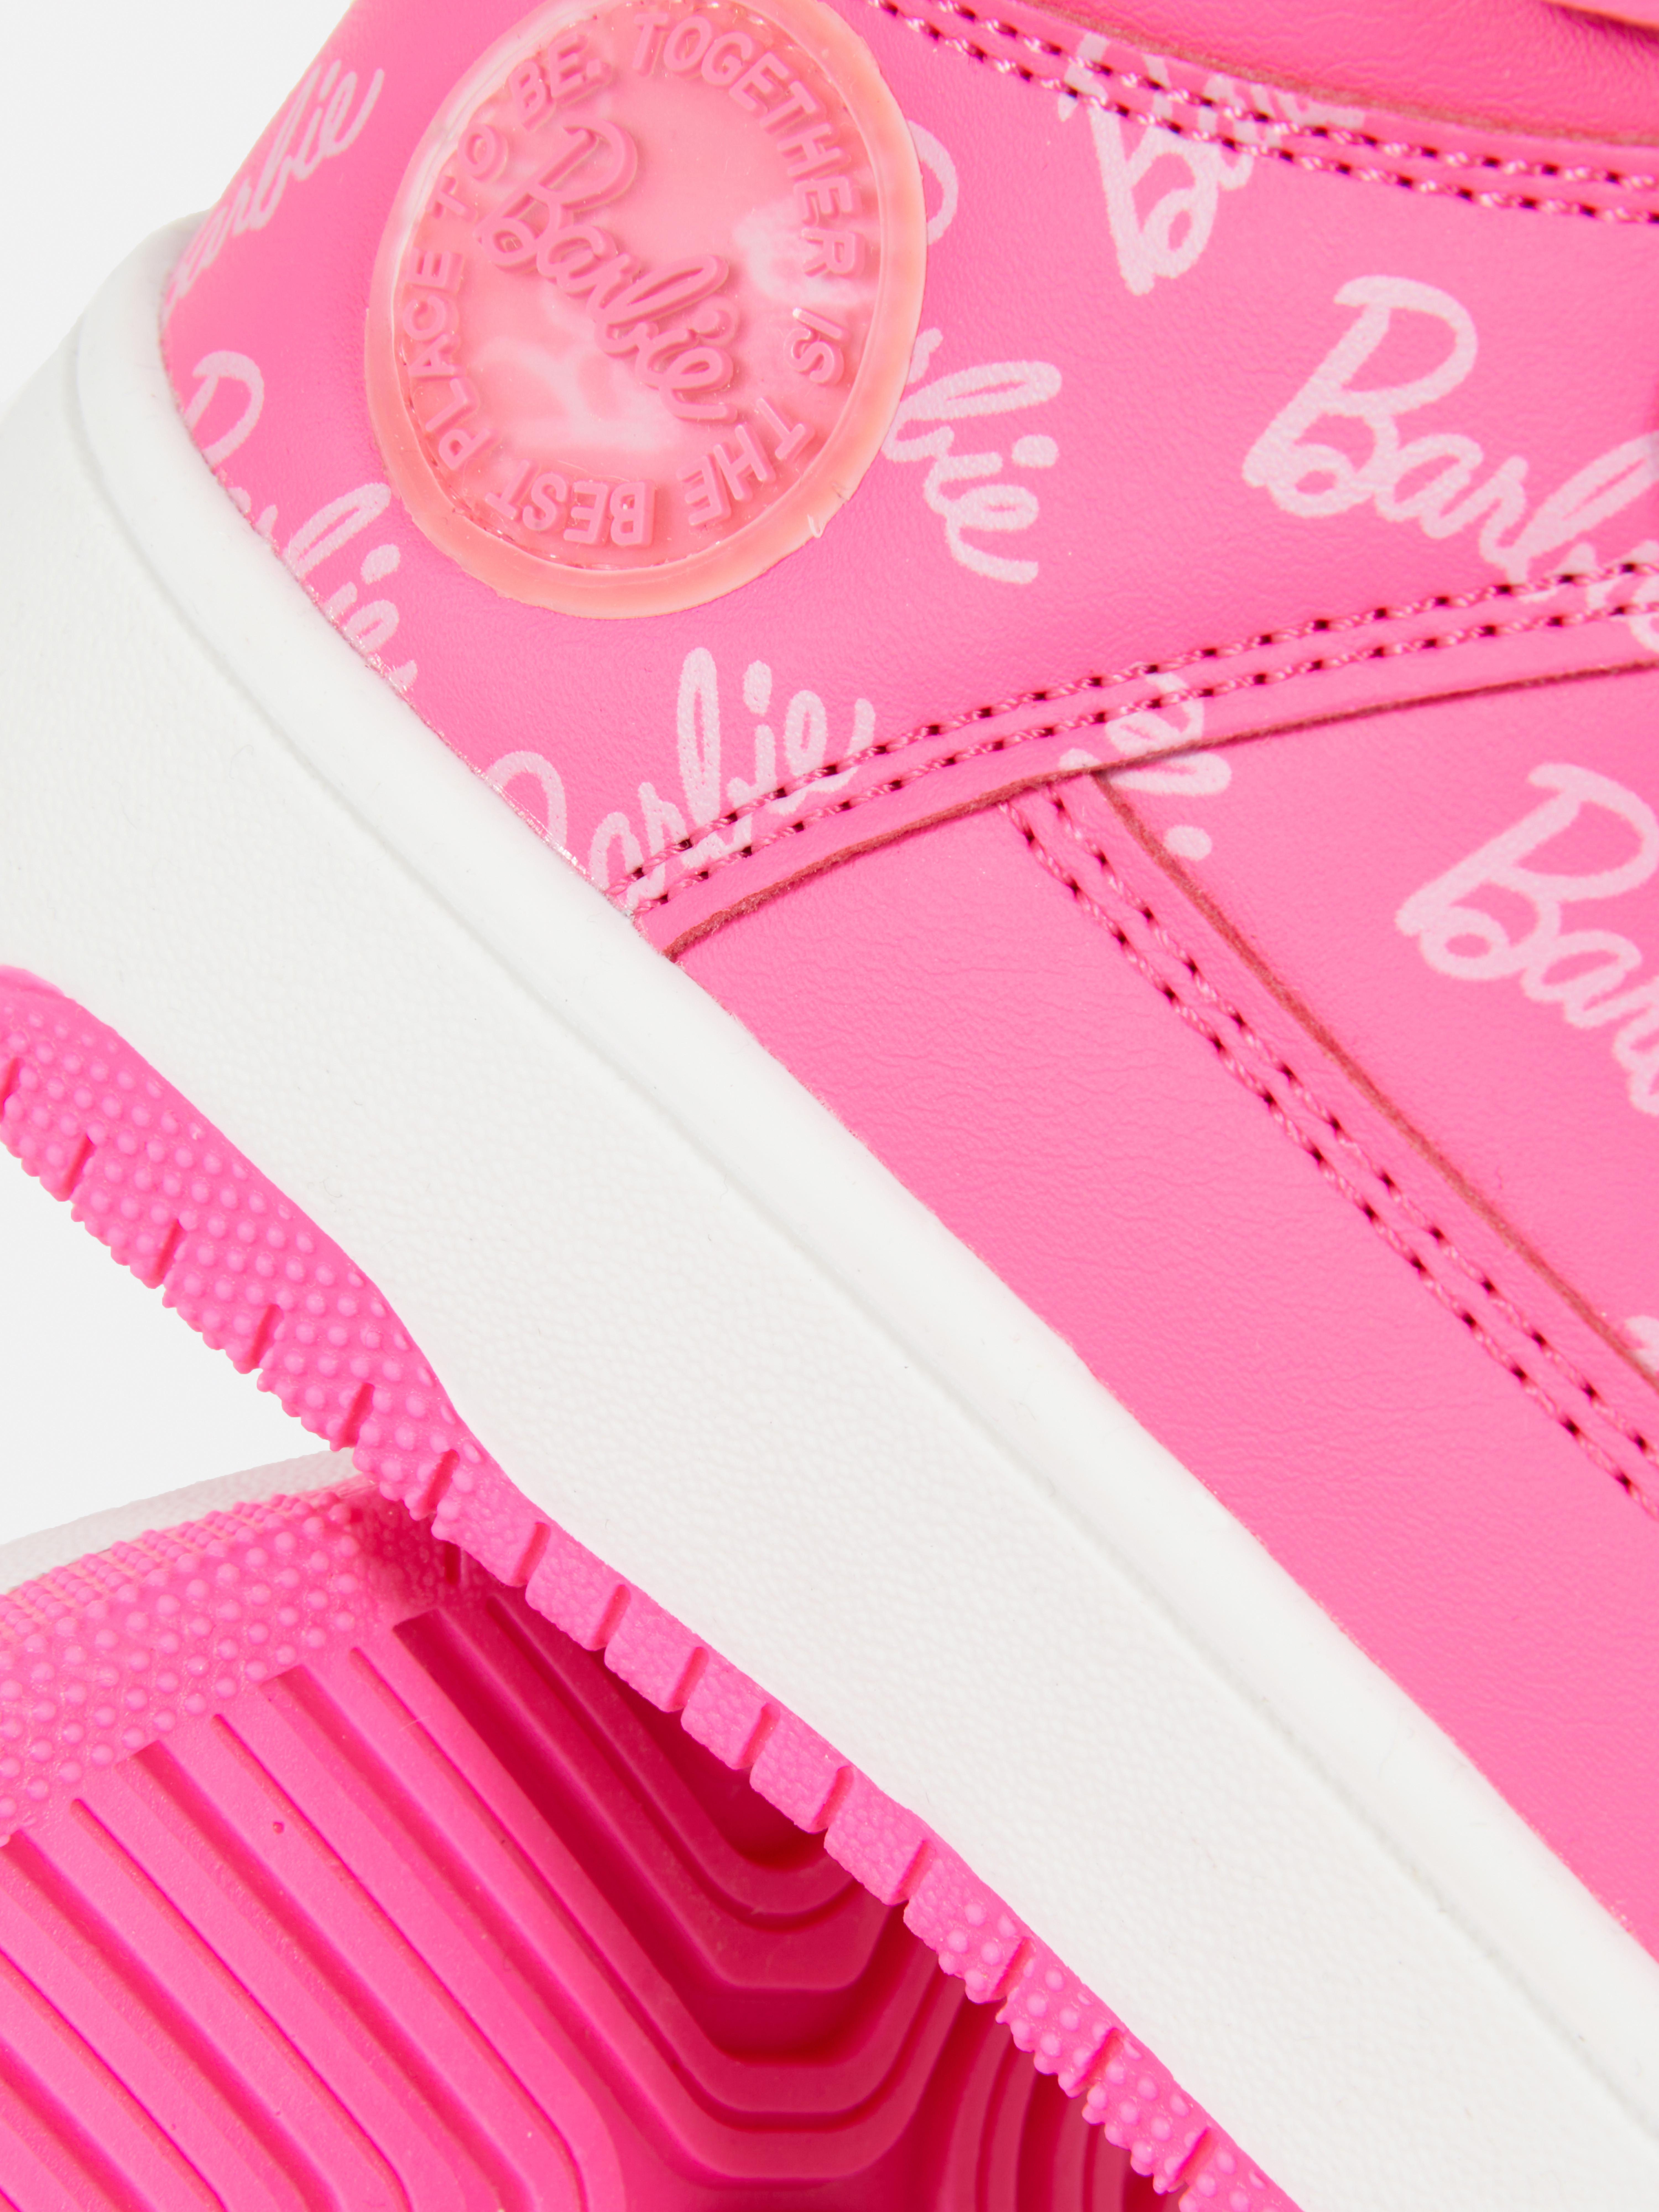 Chaussures de sport Barbie pour filles 